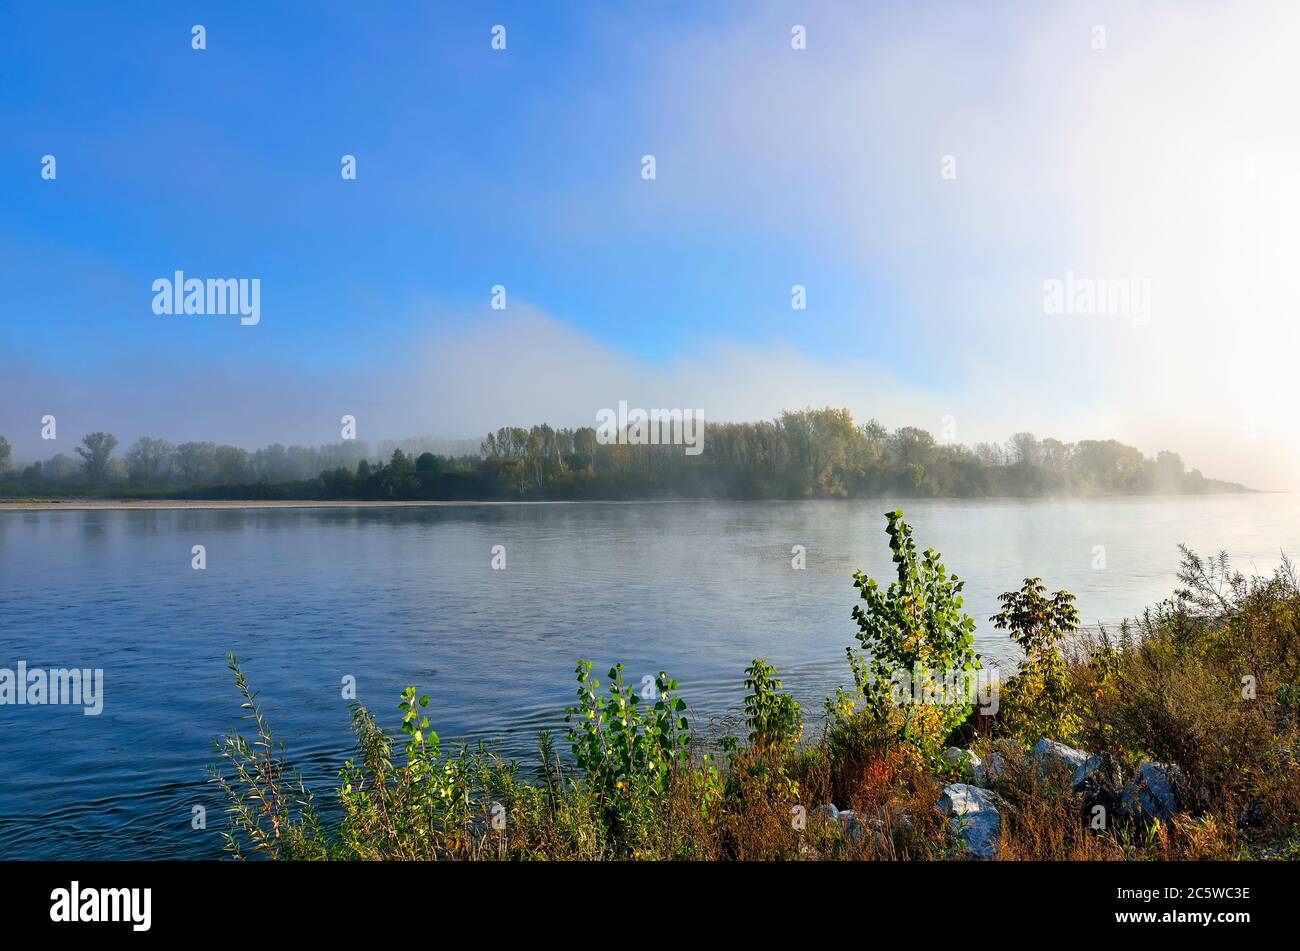 Früher nebliger Morgen über dem Fluss - wunderschöne Sommerlandschaft. Dichter Nebel über dem Wald am Ufer - Frische, Ruhe und Genuss der Natur Stockfoto